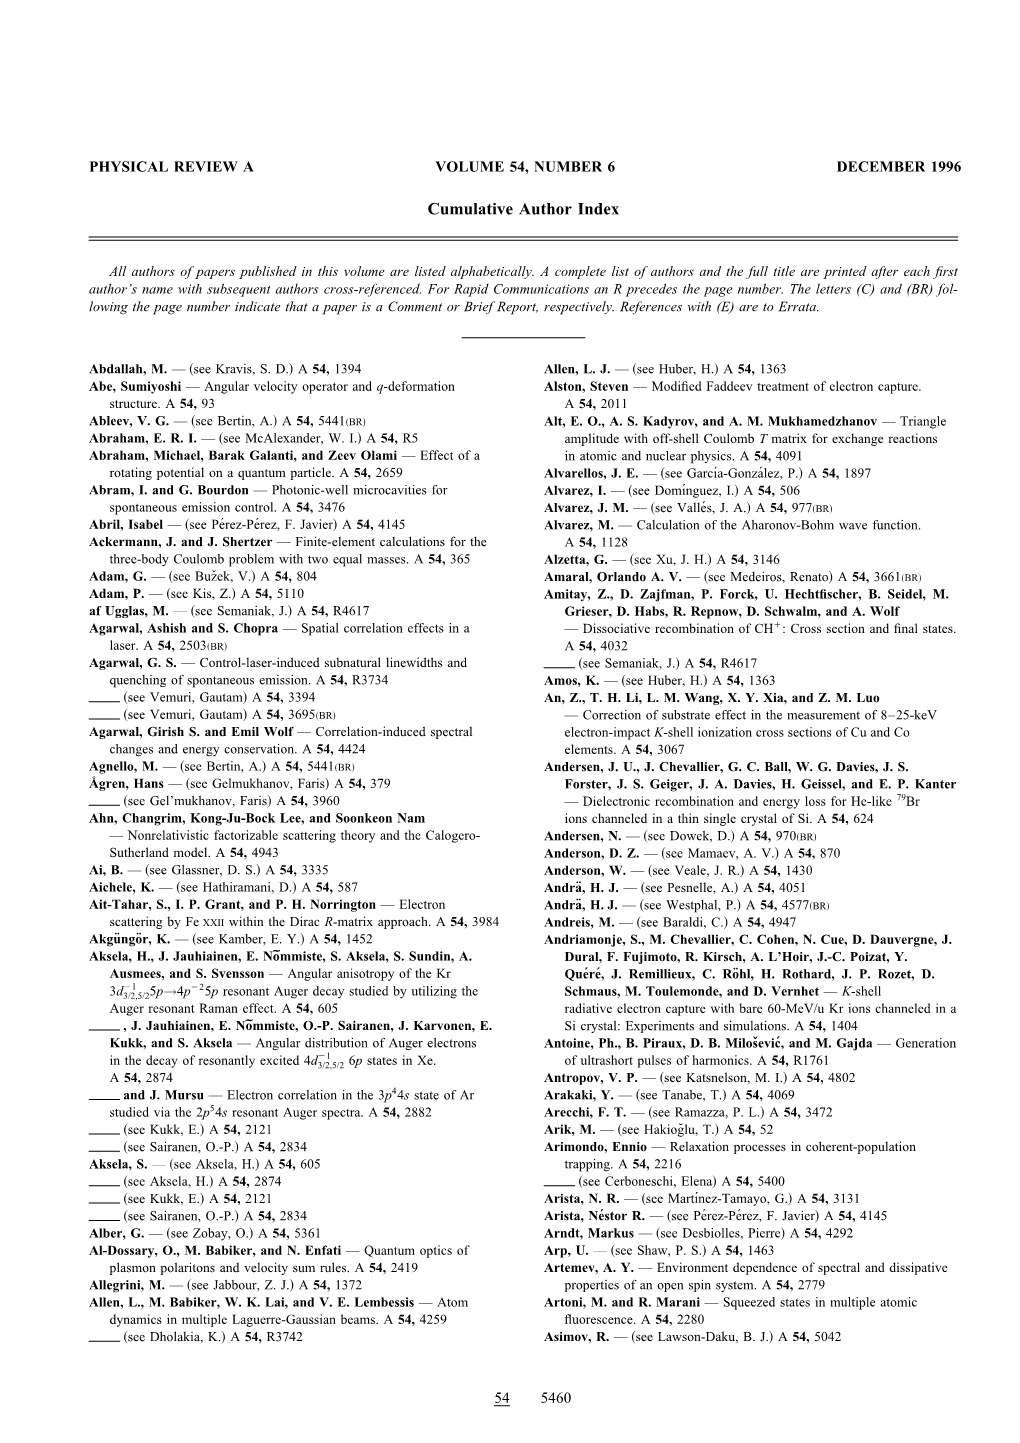 Cumulative Author Index (Print)